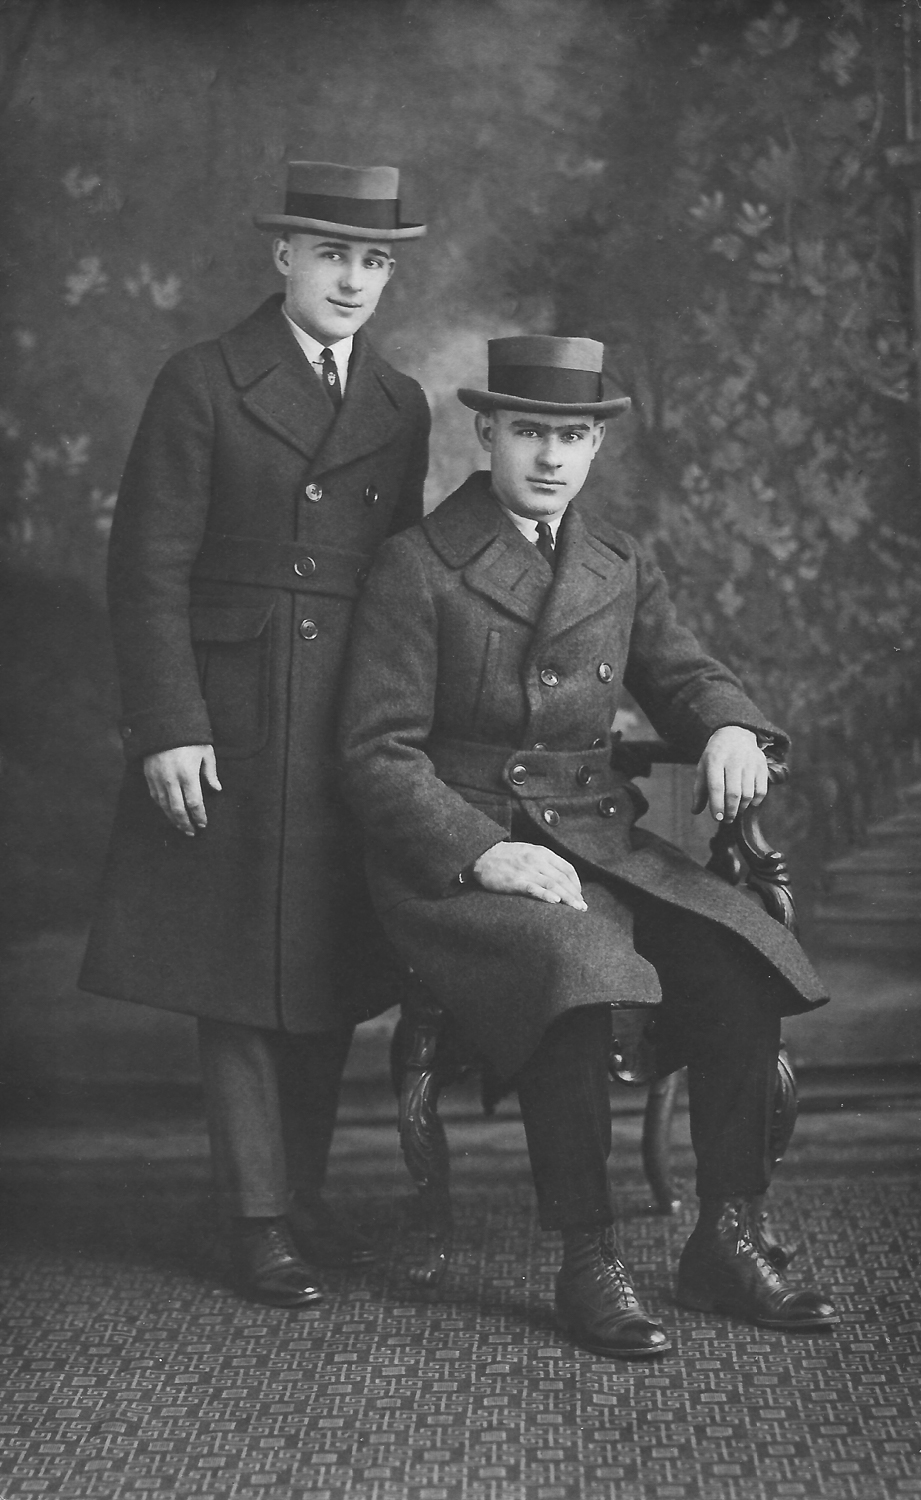 Pete and Walt Pozdro, around 1926